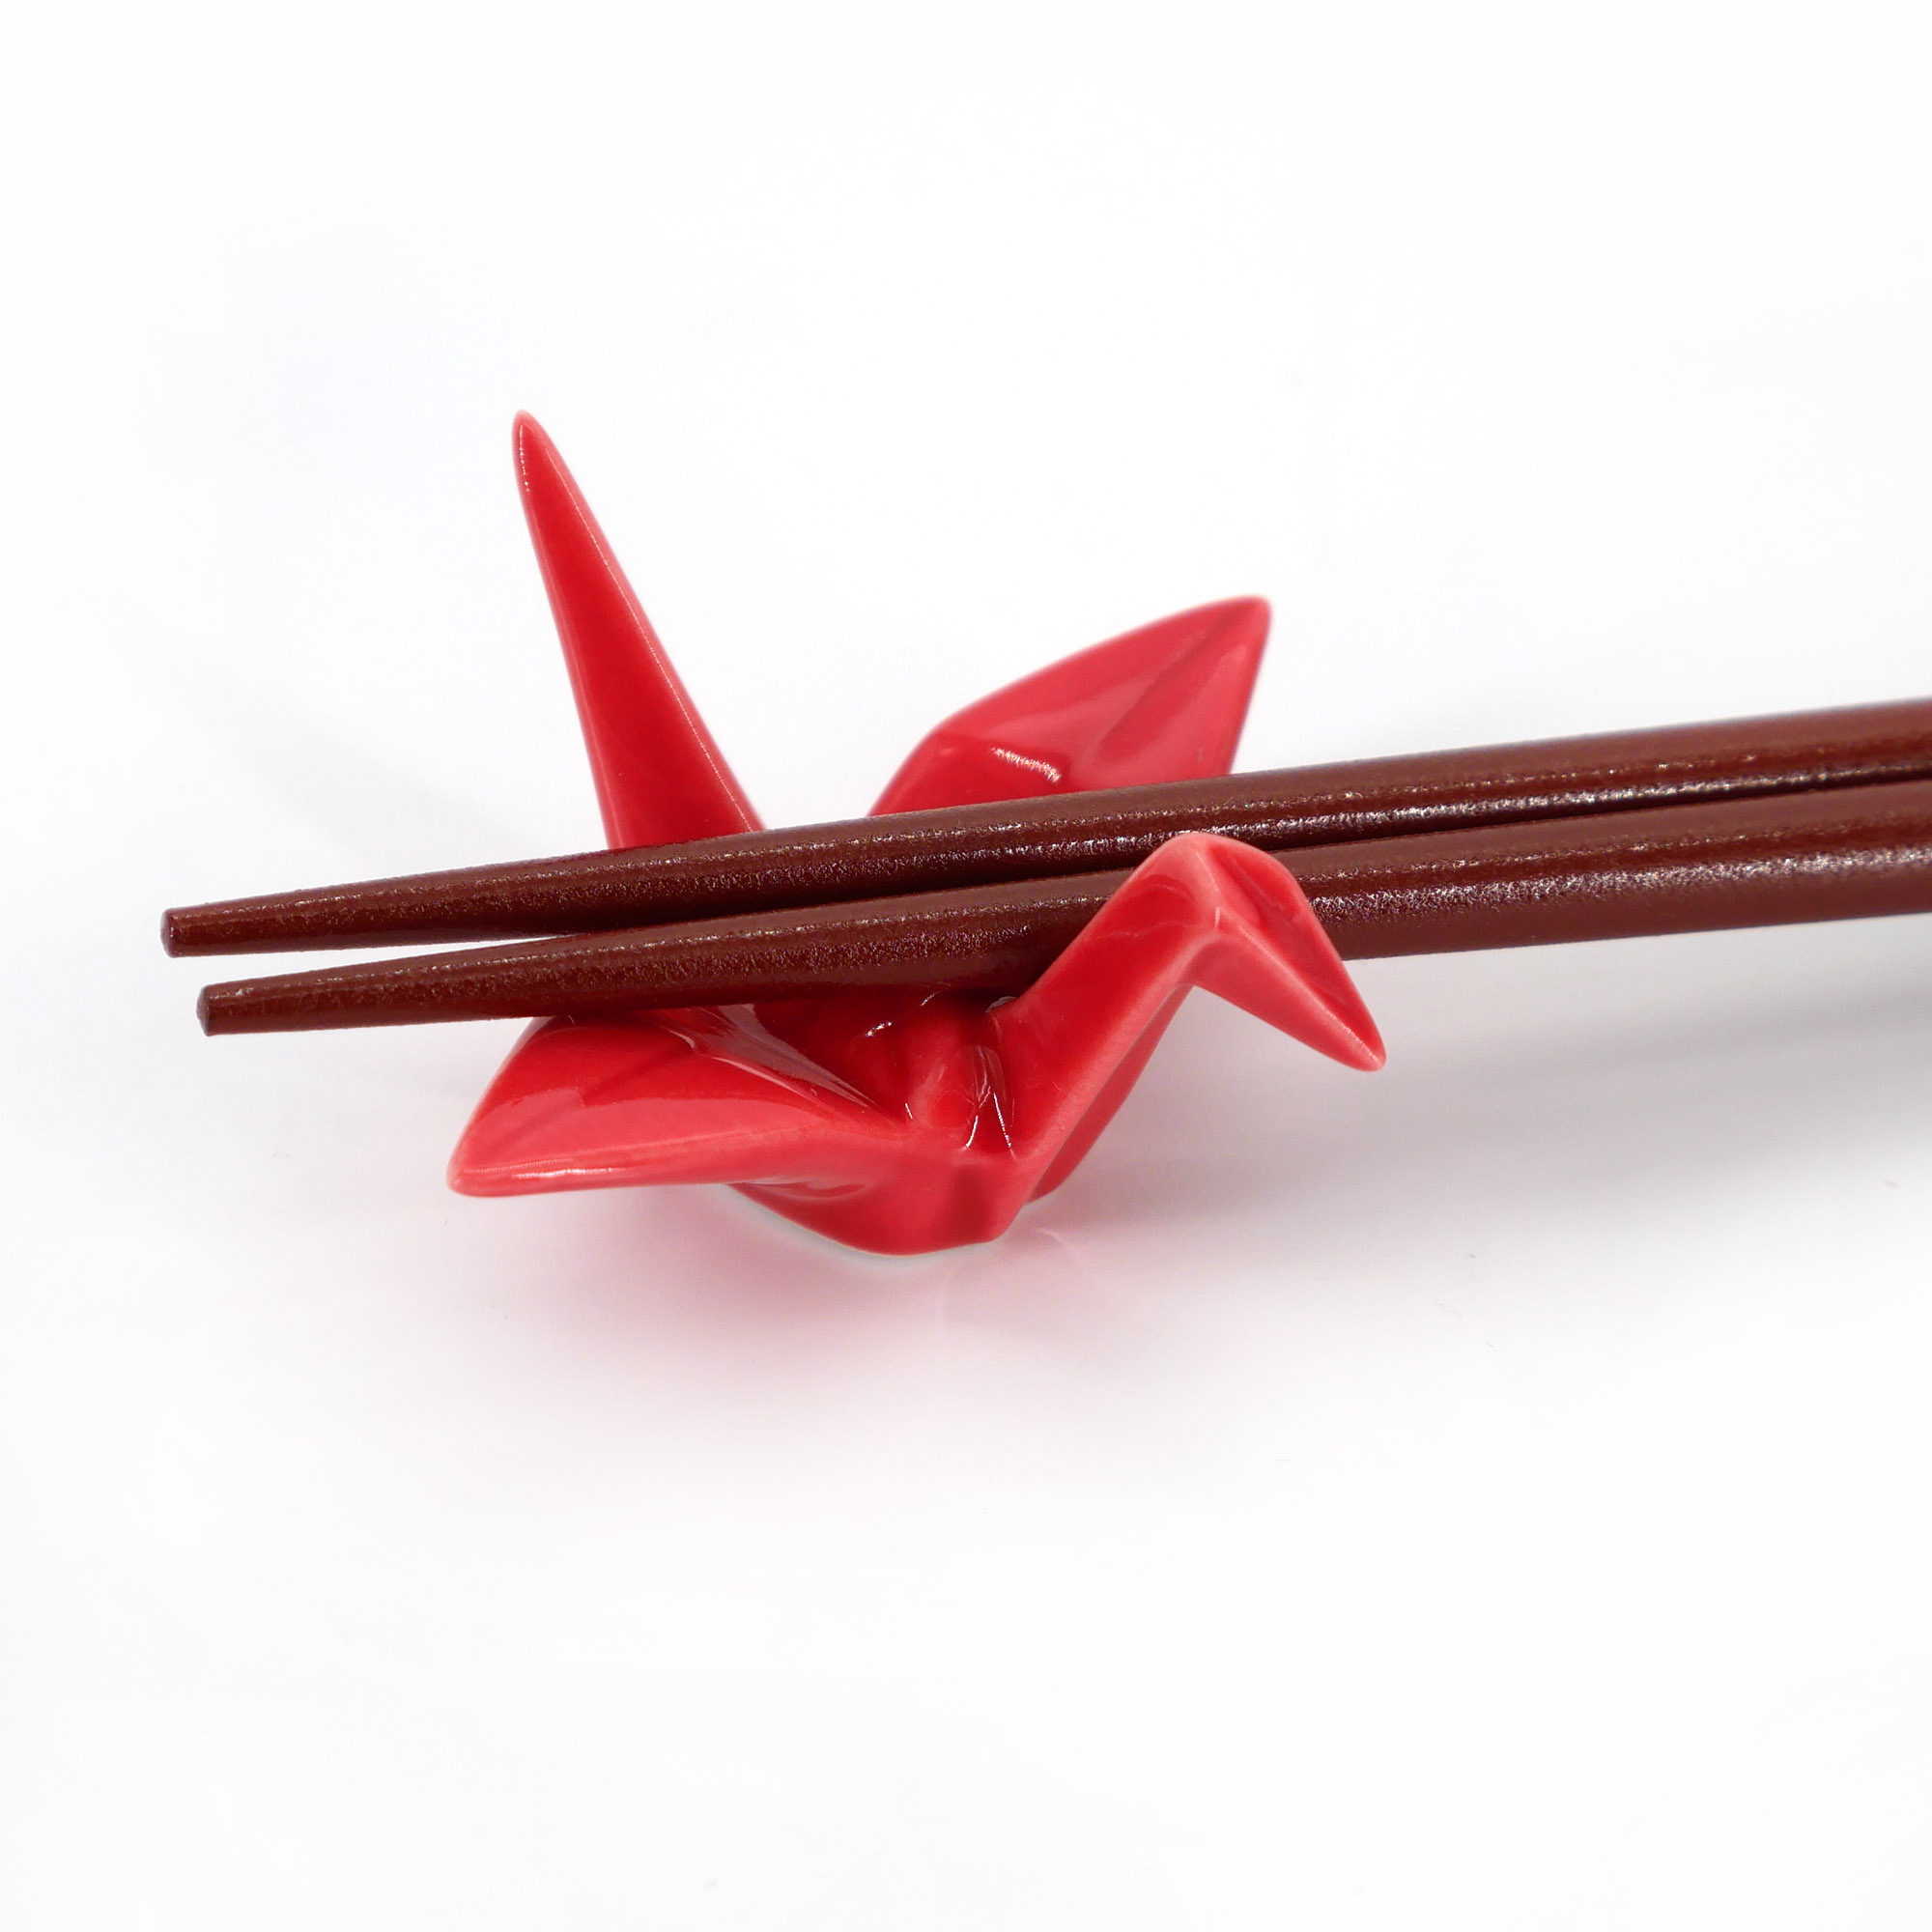 Paire de baguettes japonaises rouges - Made in Japan